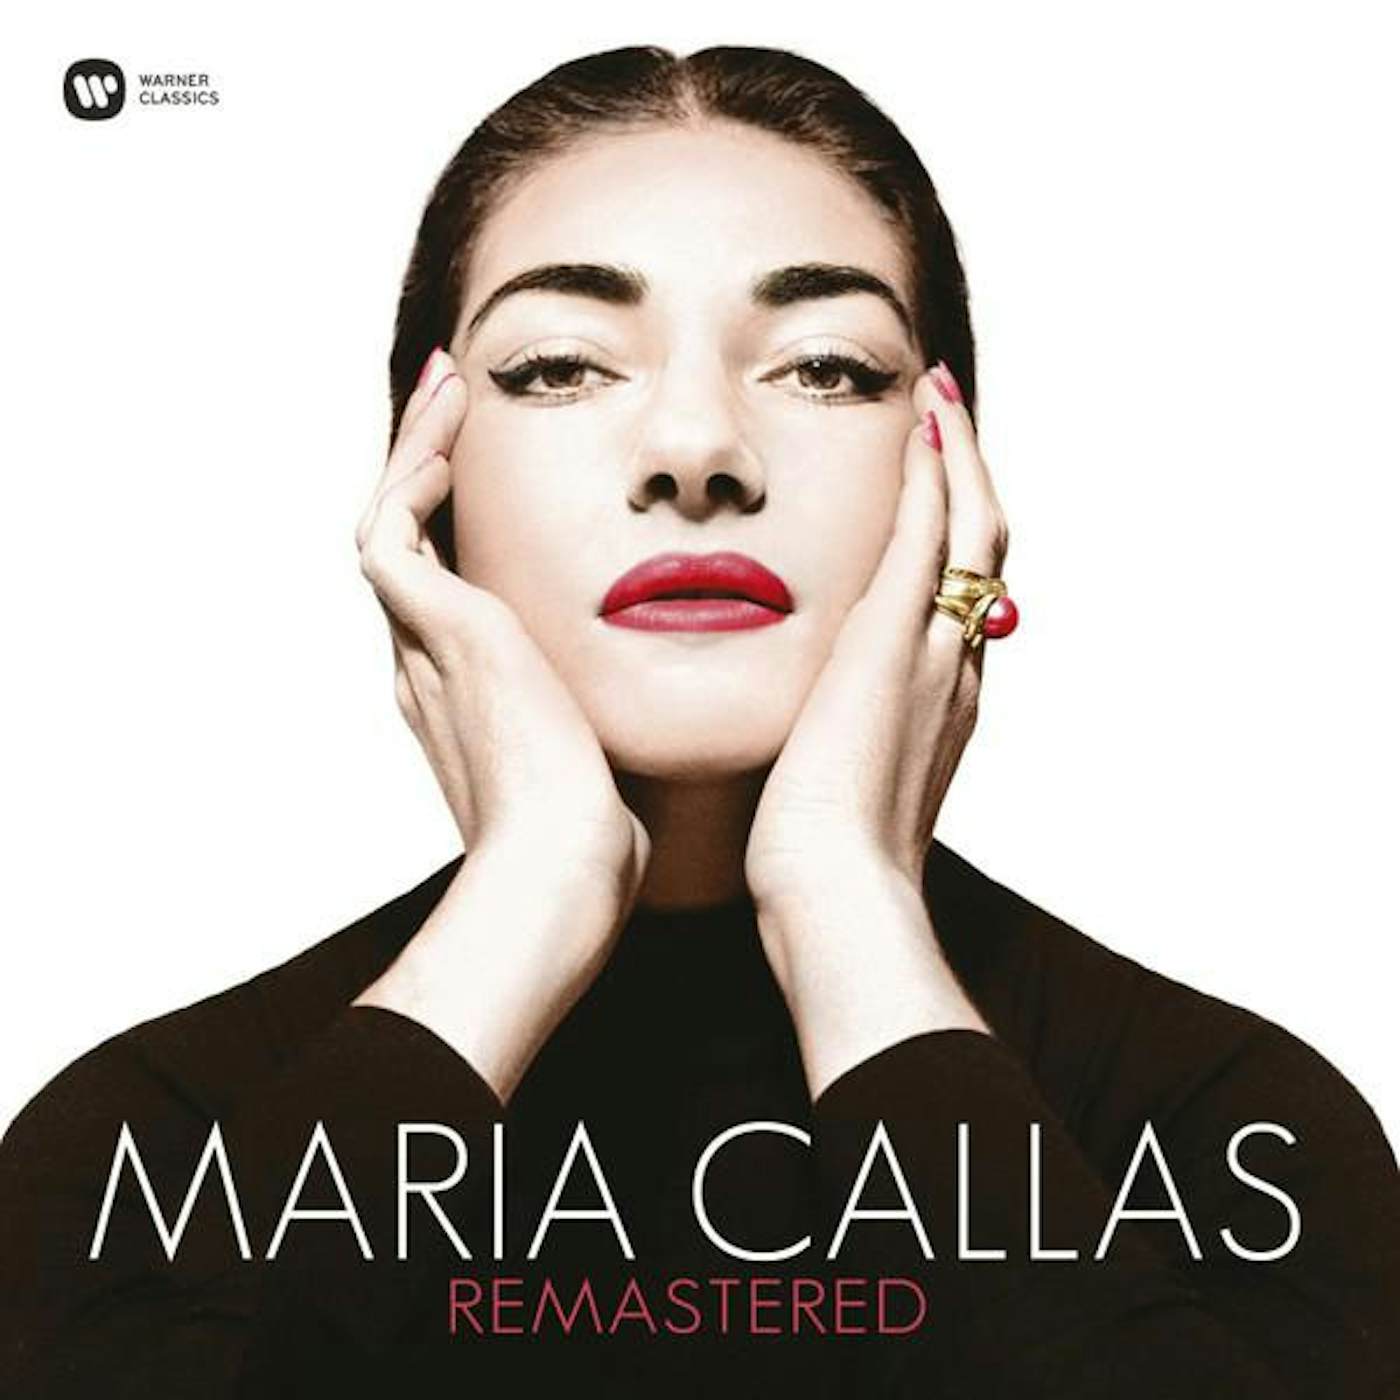 MARIA CALLAS Vinyl Record